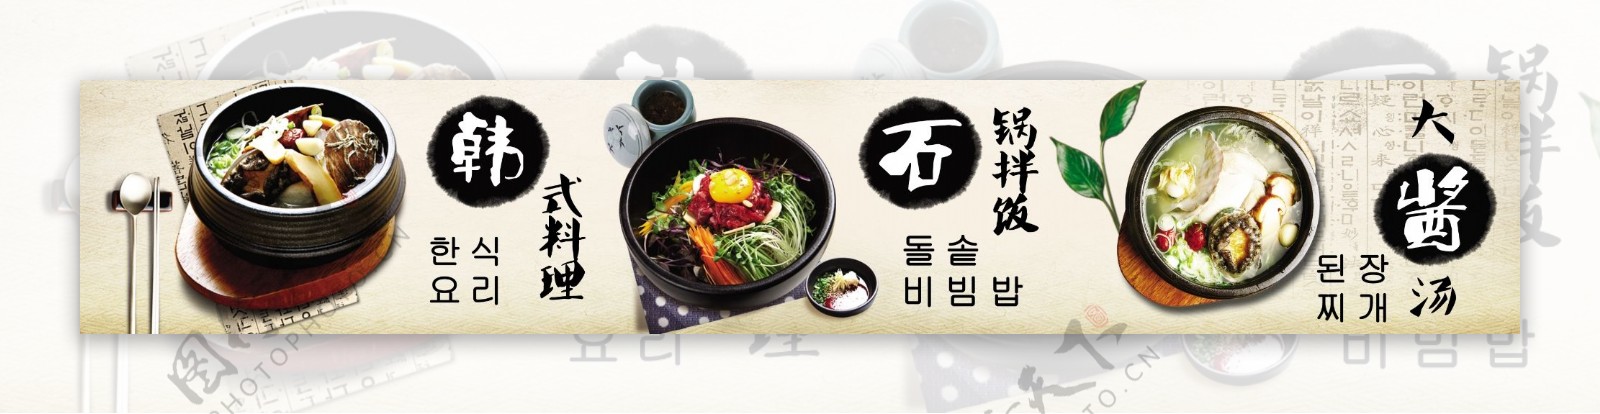 韩式料理橱窗图片